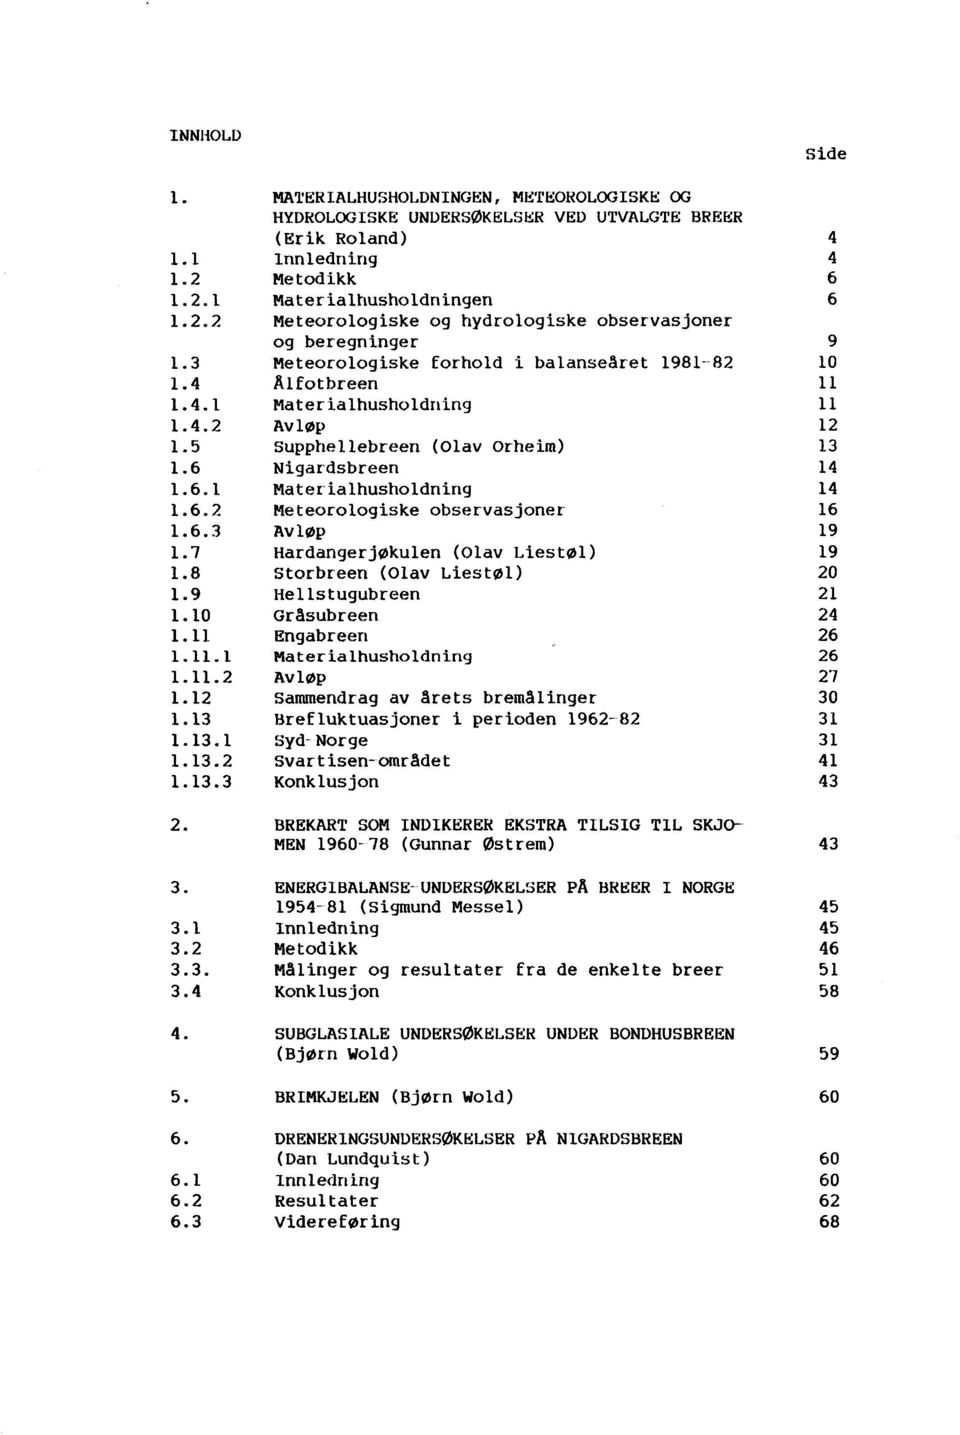 beregninger Meteorologiske forhold i balansearet 1981--82 JHfotbreen Materialhusholdning AvlØp Supphellebreen (Olav orheim) Nigar"dsbreen Materialhusholdning Meteorologiske observasjoner" Avløp